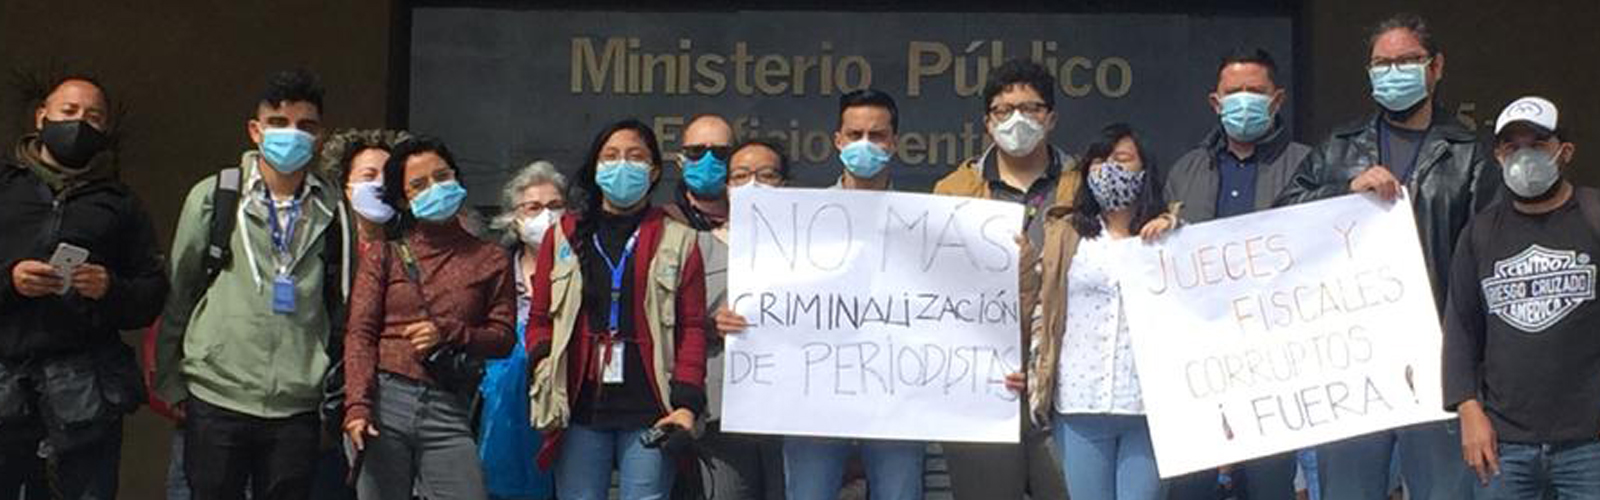 Periodistas y libertad de expresión en riesgo en Guatemala